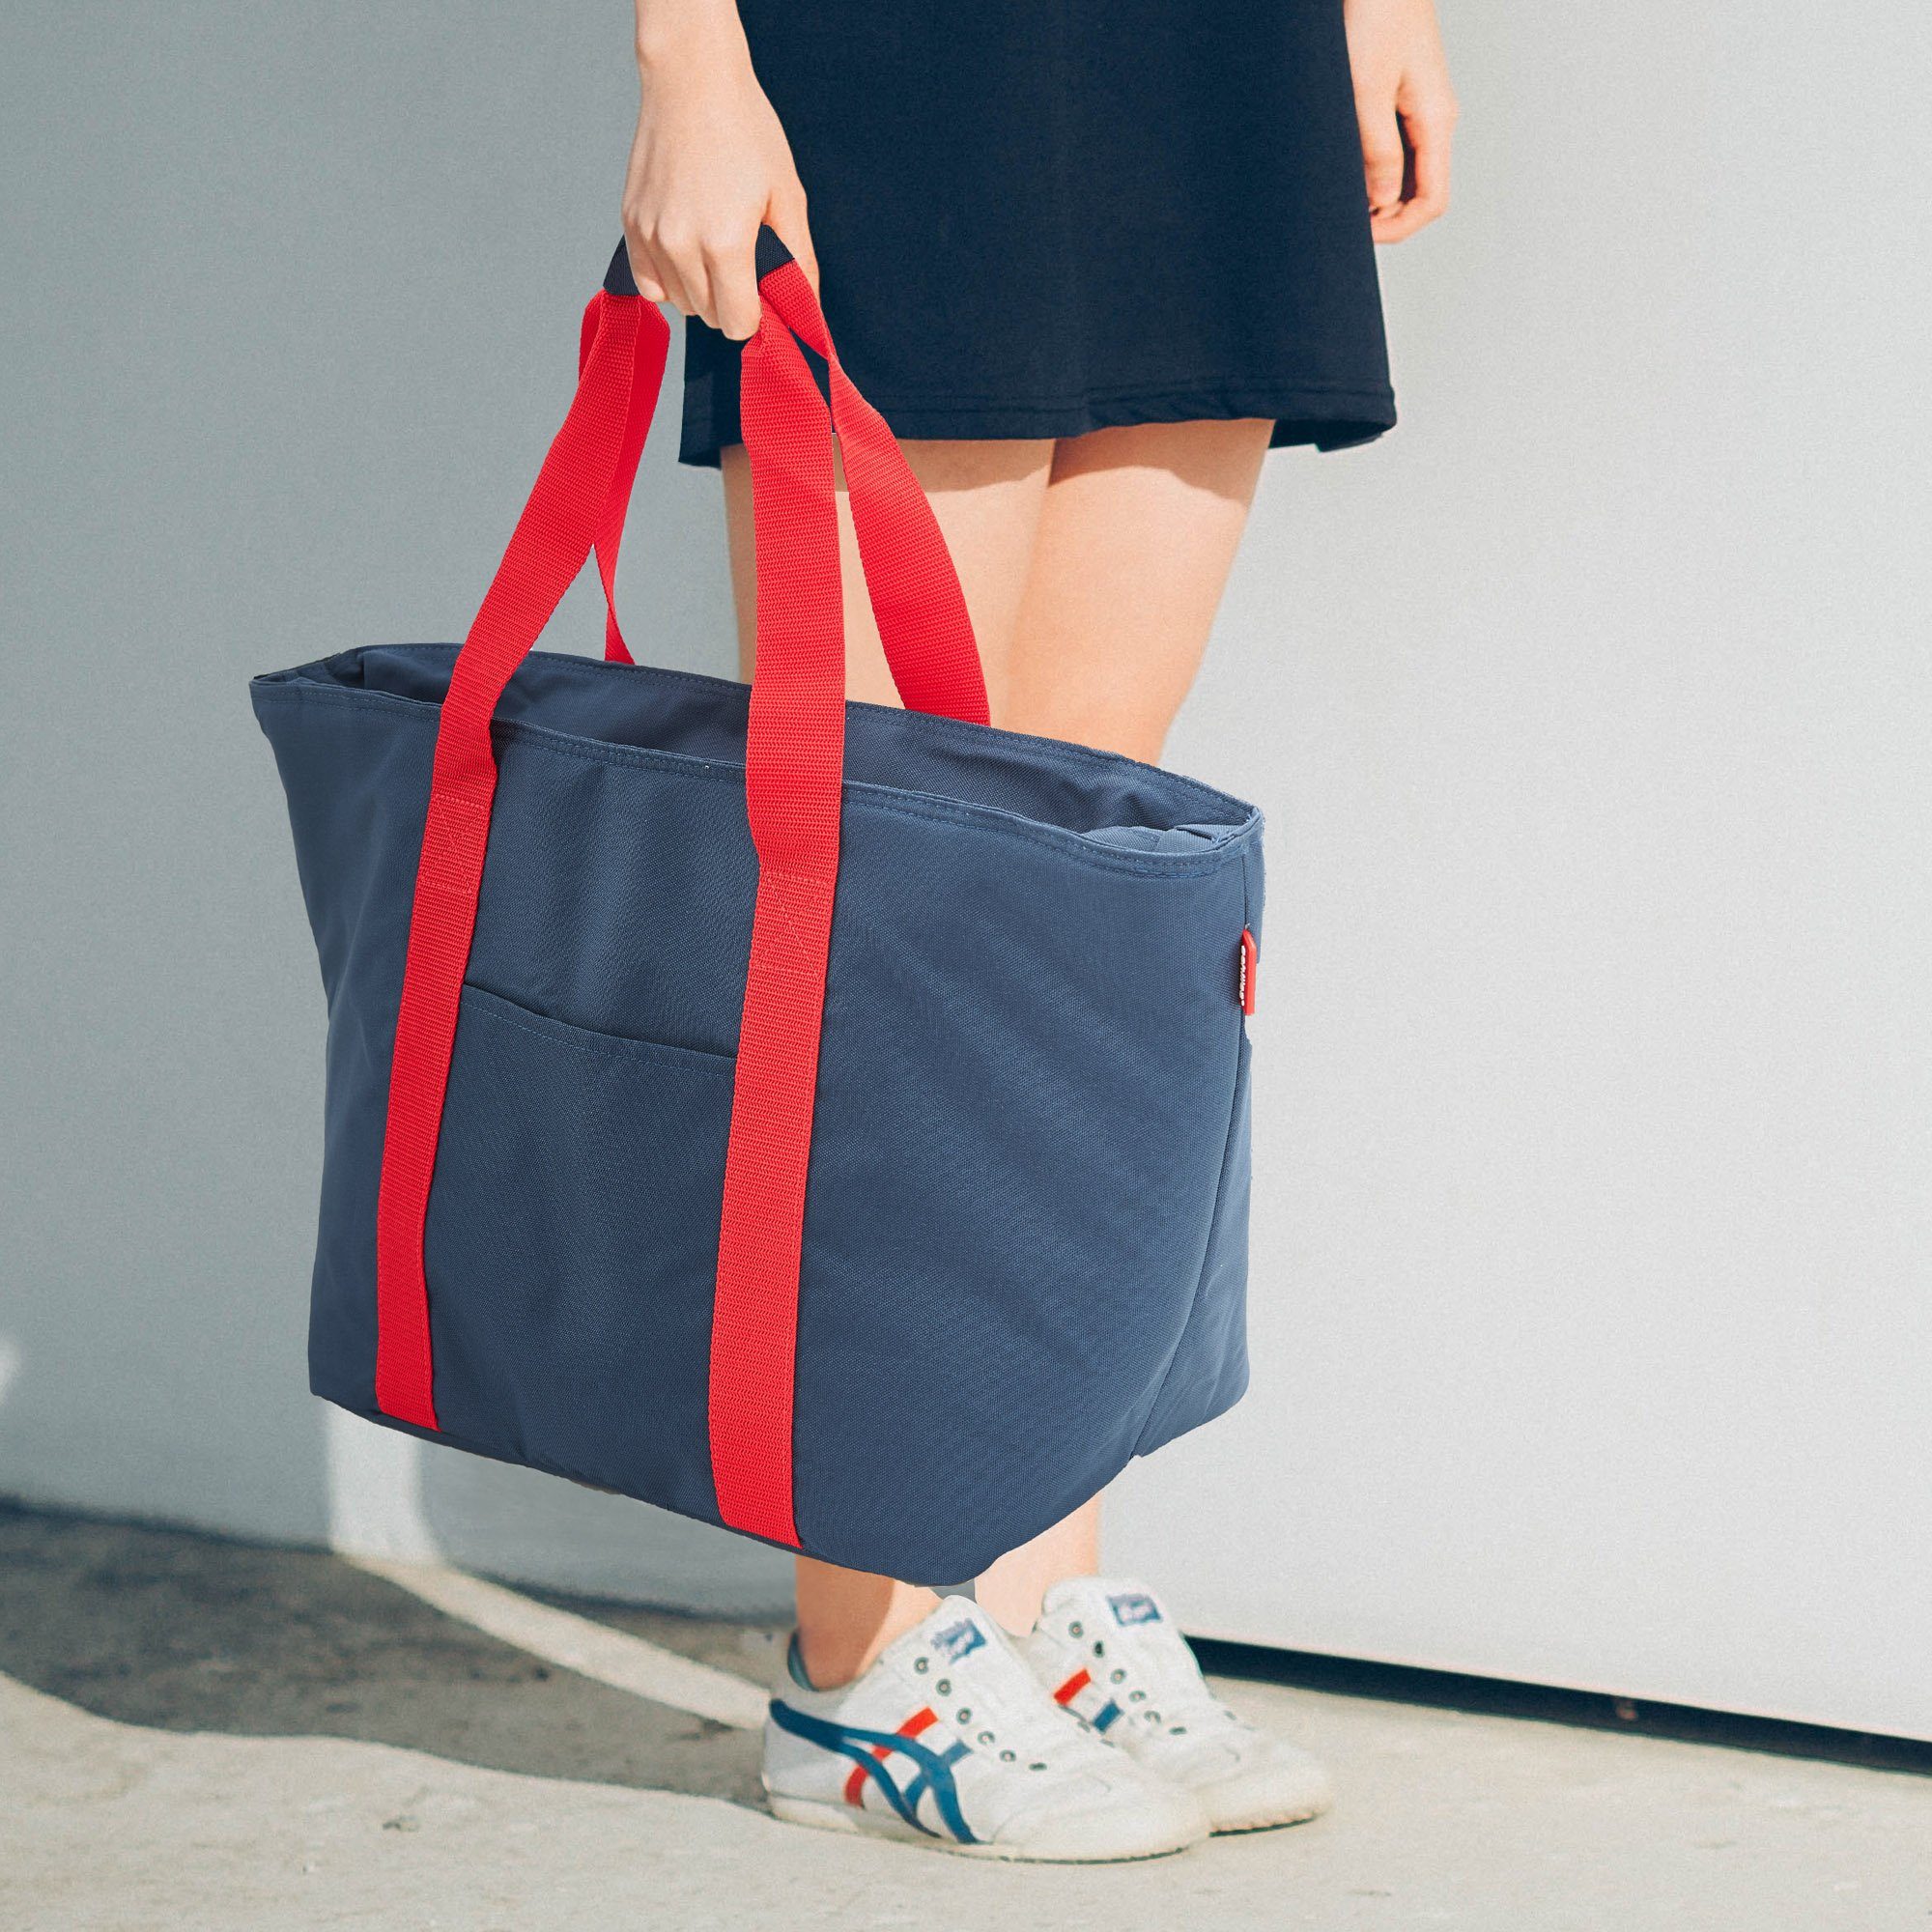 Flaschenfächer Kühlfunktion achilles Freizeittasche / navy mit rot mit Einkaufsshopper Shopper-Tasche